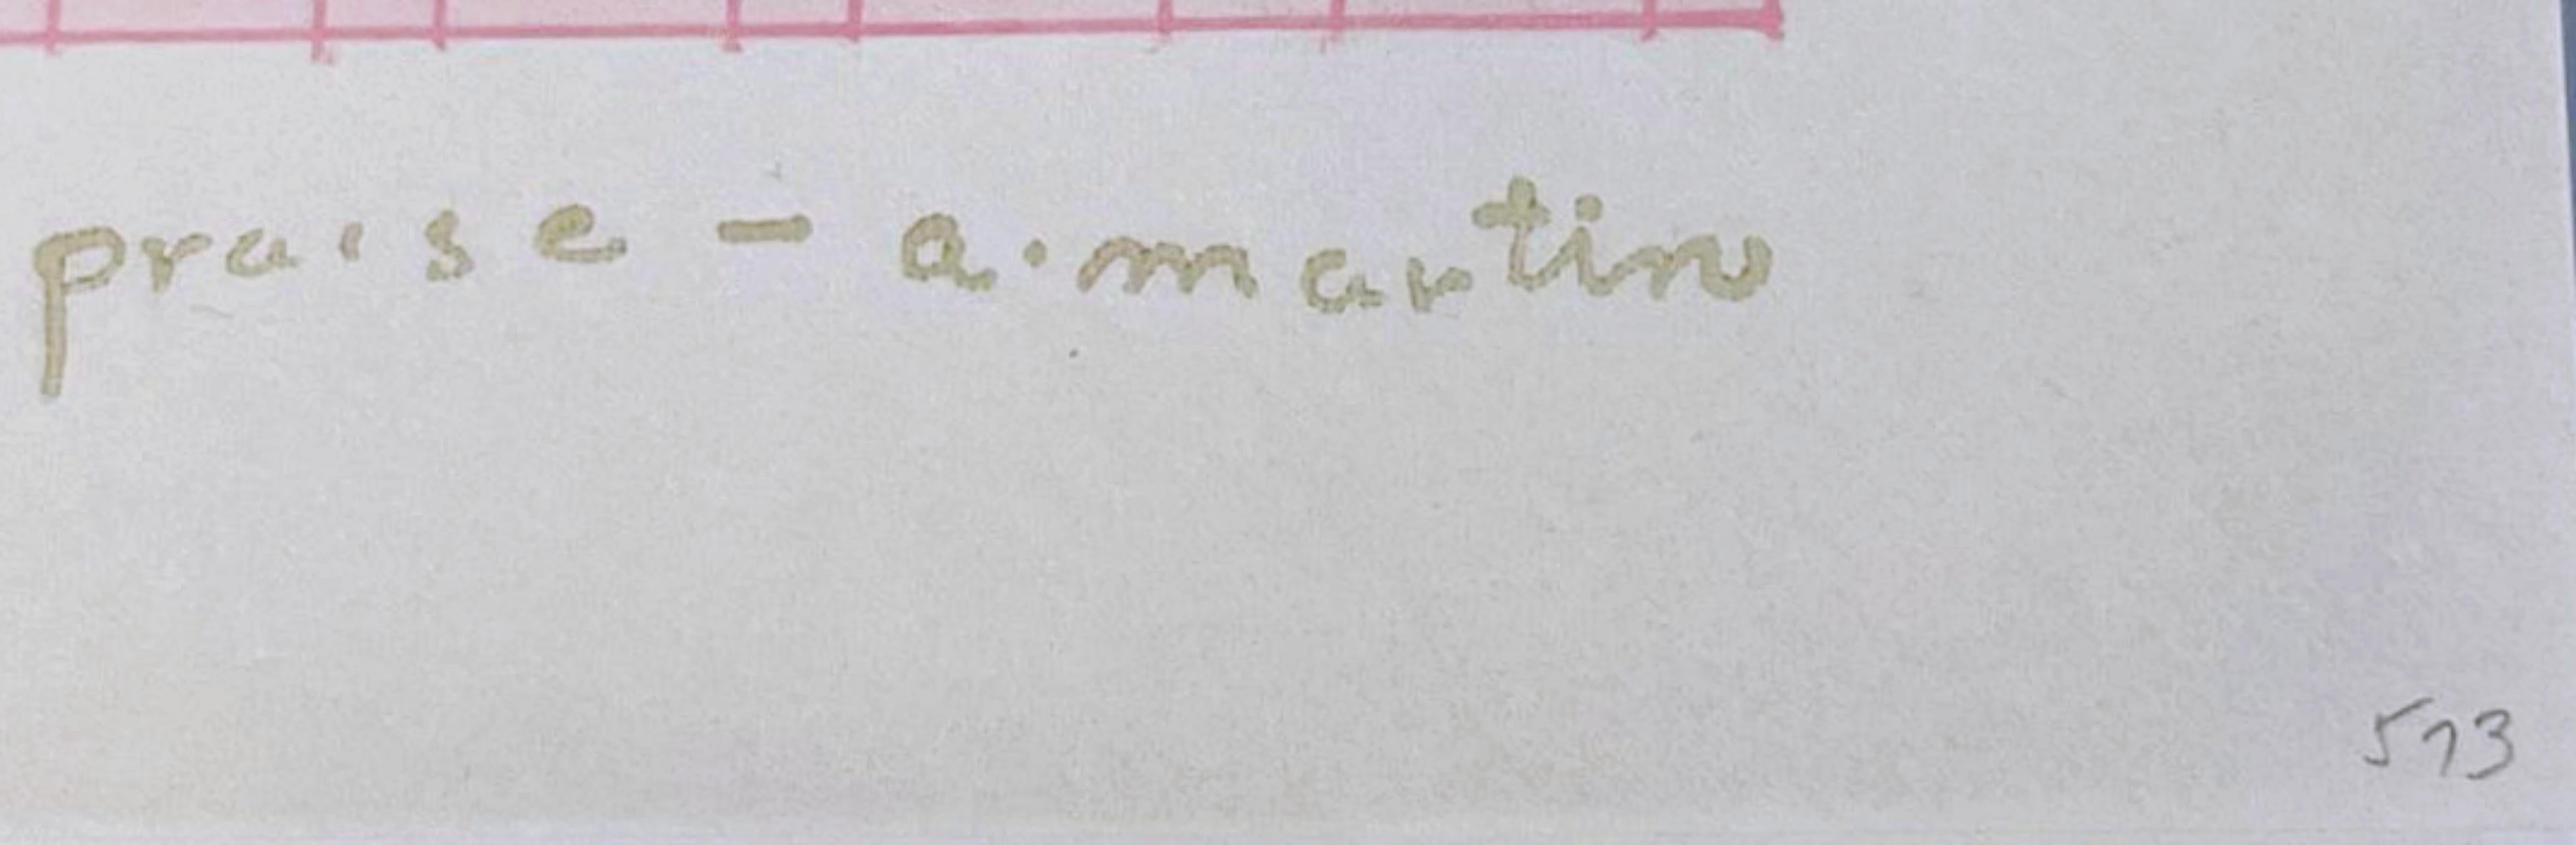 Praise, édition limitée, signature du timbre Dalton en papier à lien naturel et or  - Minimaliste Print par Agnes Martin